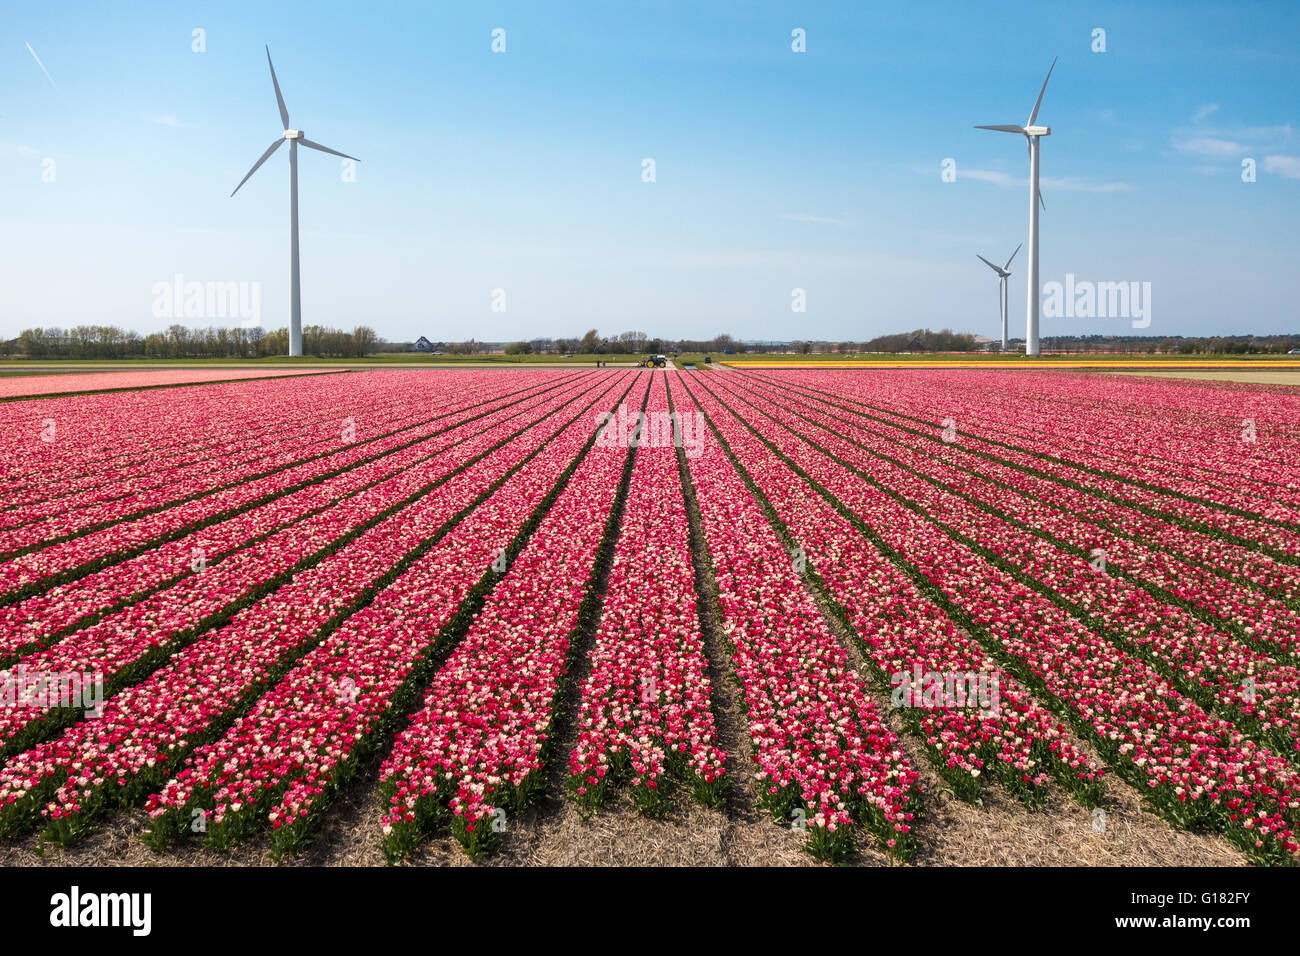 I Tulipani di turbine eoliche in Paesi Bassi. Campi di Tulipani con un misto di colore rosso e bianco tulipani con tre mulini a vento. Foto Stock